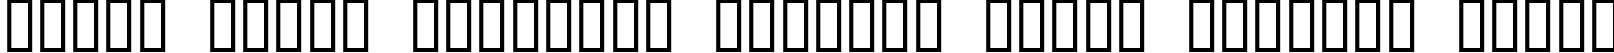 Пример написания шрифтом ACID LABEL___ текста на белорусском